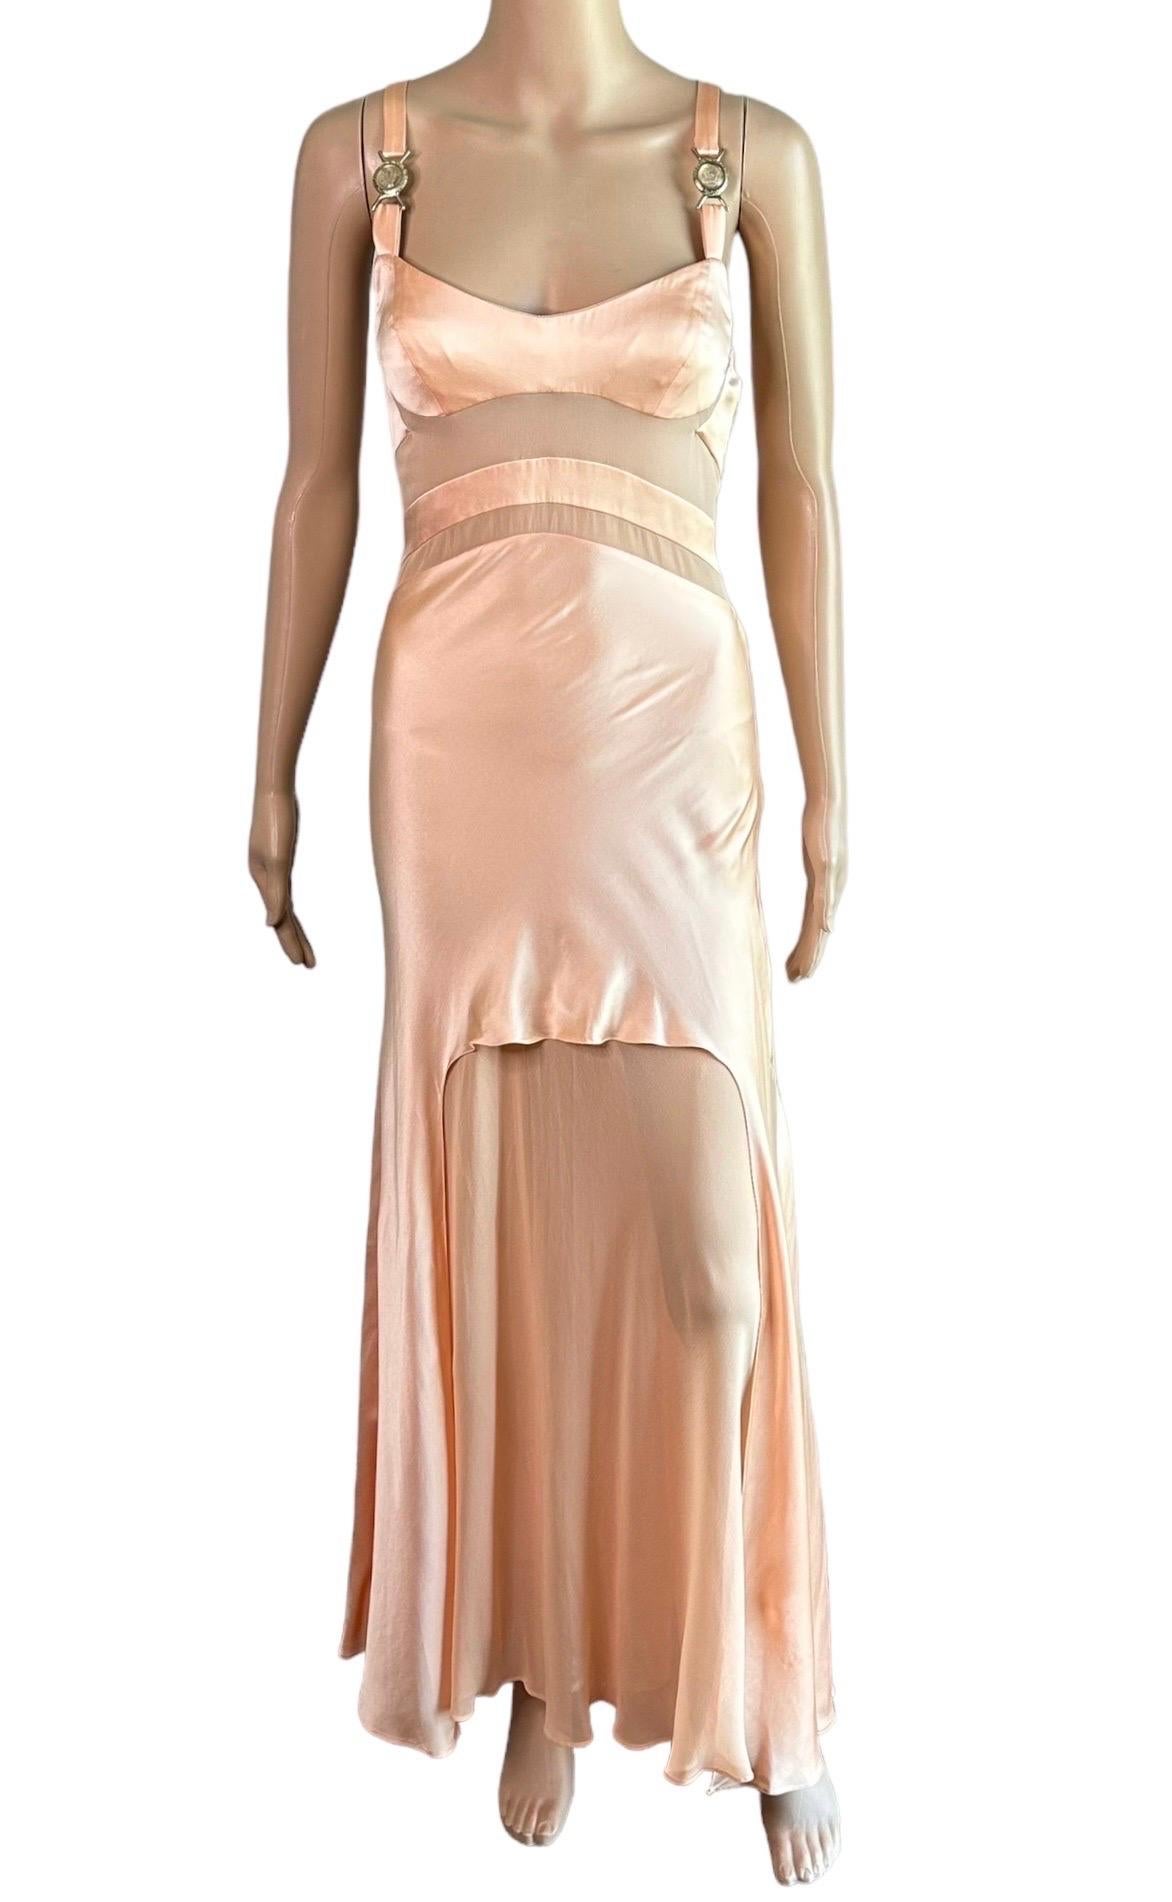 Versace S/S 2005 Laufsteg Durchsichtige Paneele Medusa Logo Seide Slip Abendkleid Kleid  7